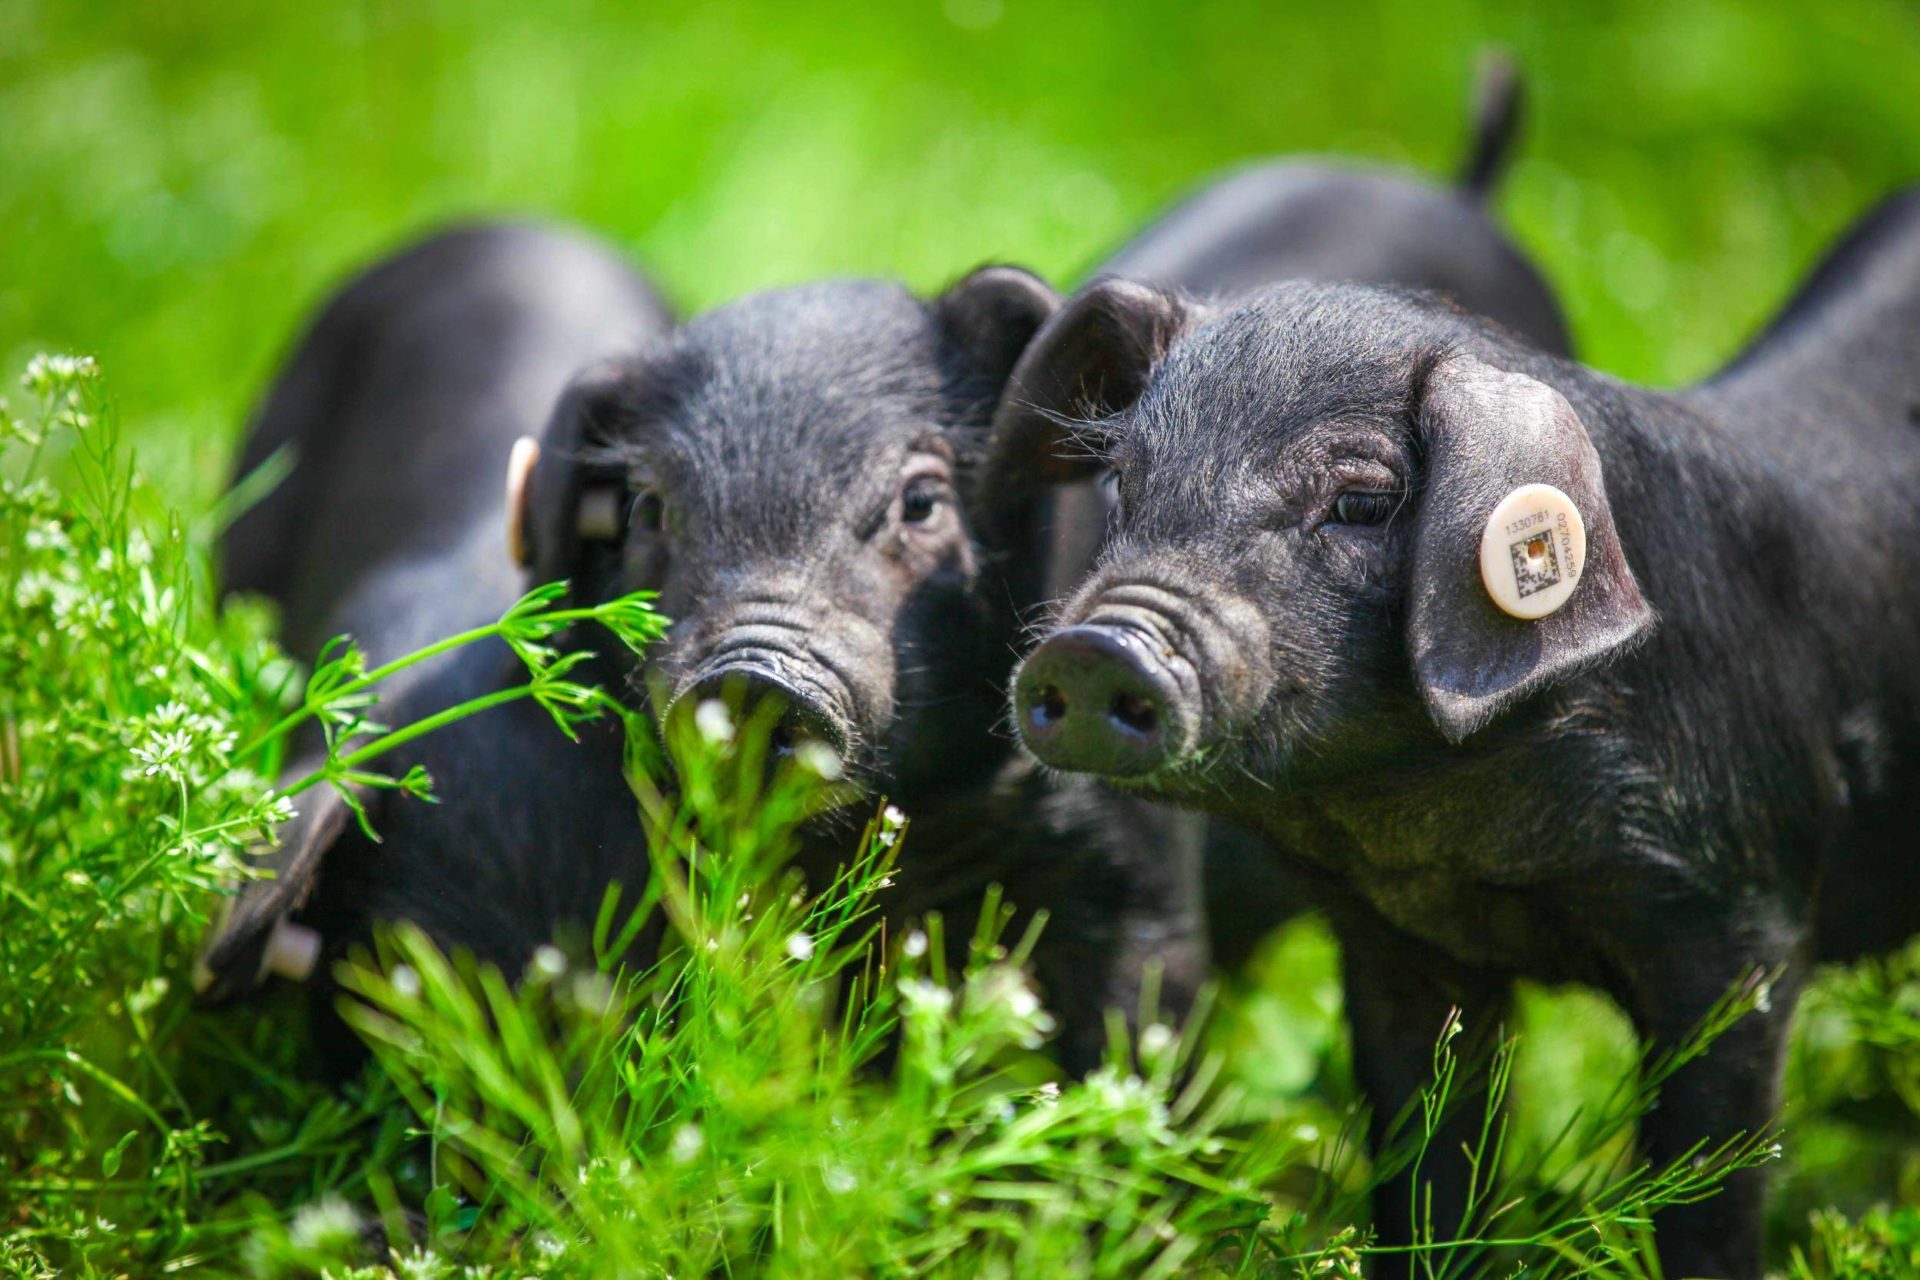 图片素材 : 农场, 草地, 花, 丛林, 动物群, 脊椎动物, 小猪, 家养猪, 猪喜欢哺乳动物 3072x2304 - - 583627 ...